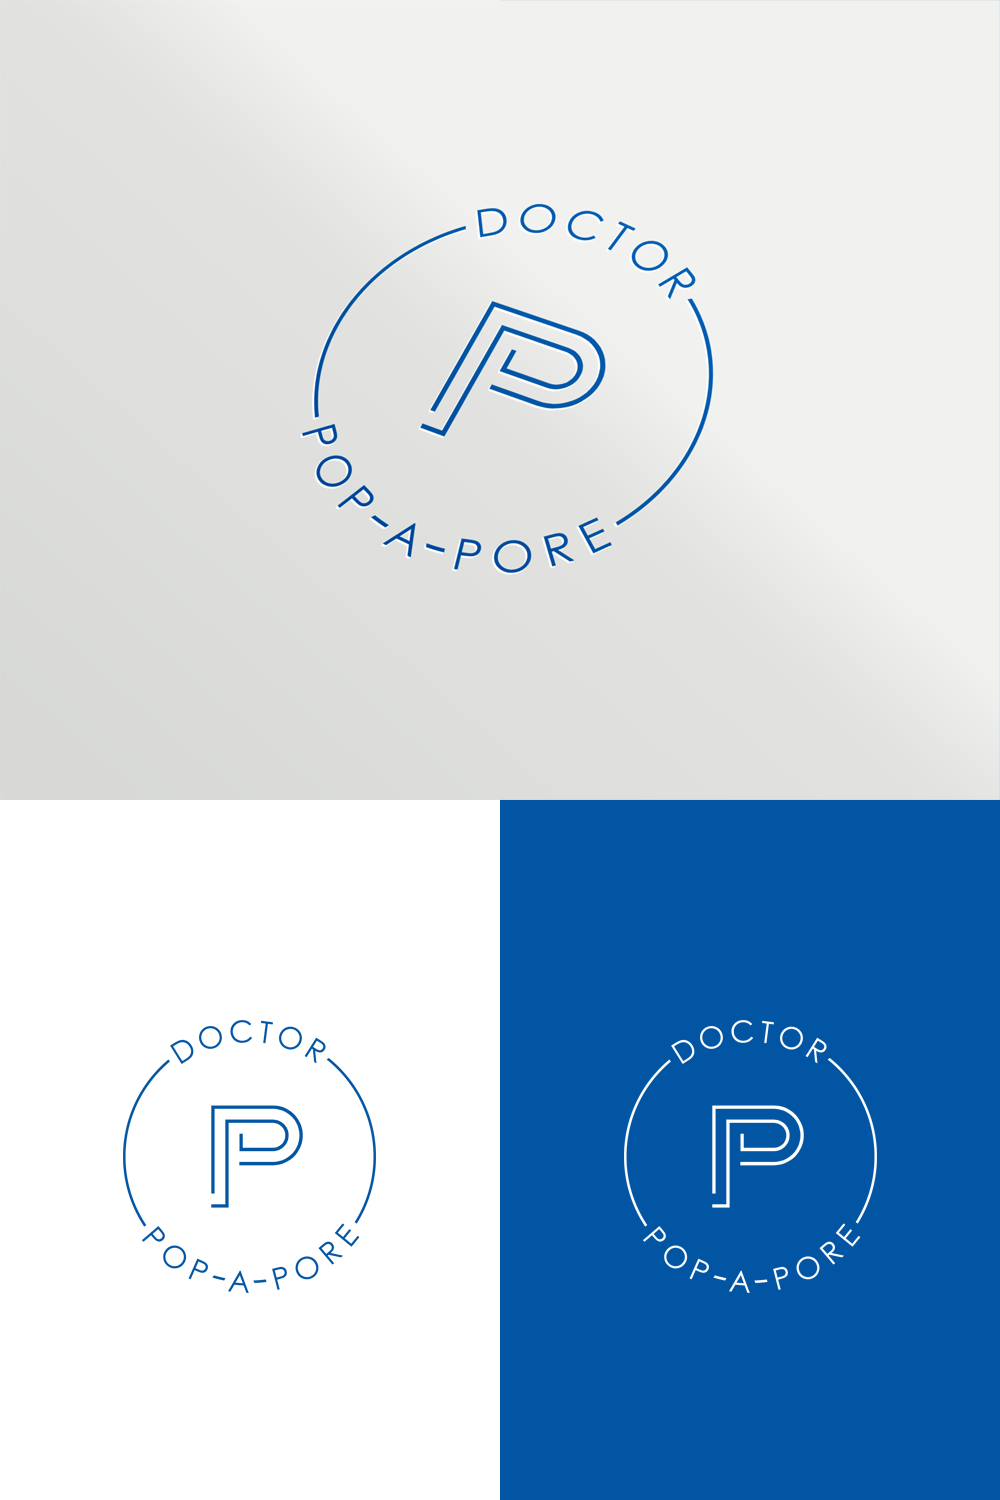 Pore Logo - Playful, Elegant Logo Design for Doctor Pop-A-Pore by widodo ...